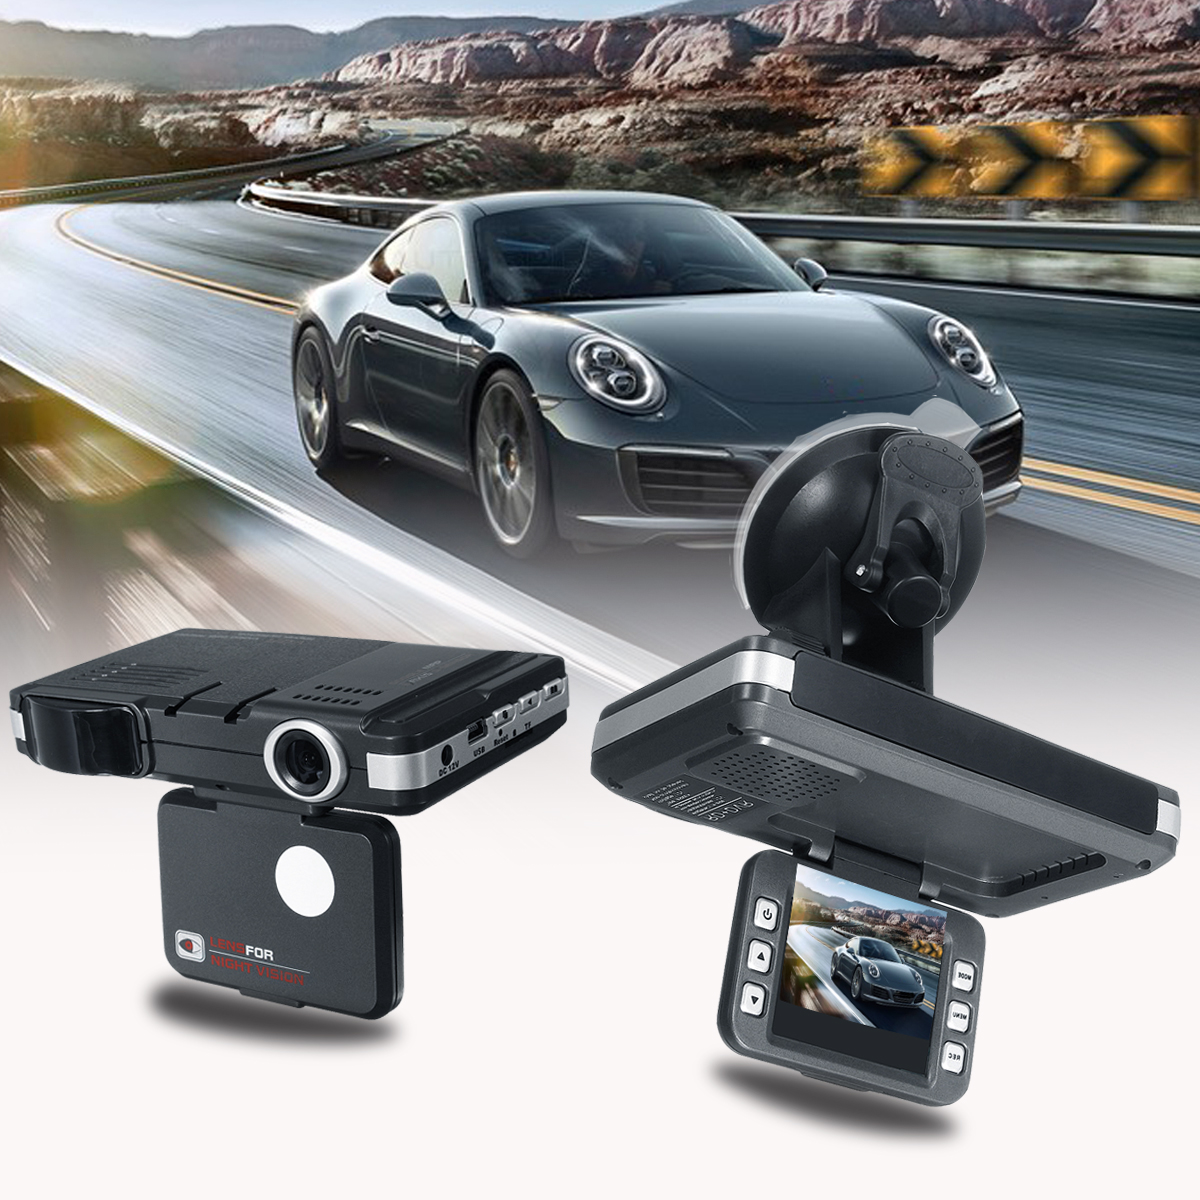 Регистраторы на панель. Видеорегистратор Radar Speed + 2in1. DVR for car with Radar Detector. Автомобильный видеорегистратор rsnt96220, 1 камера,.